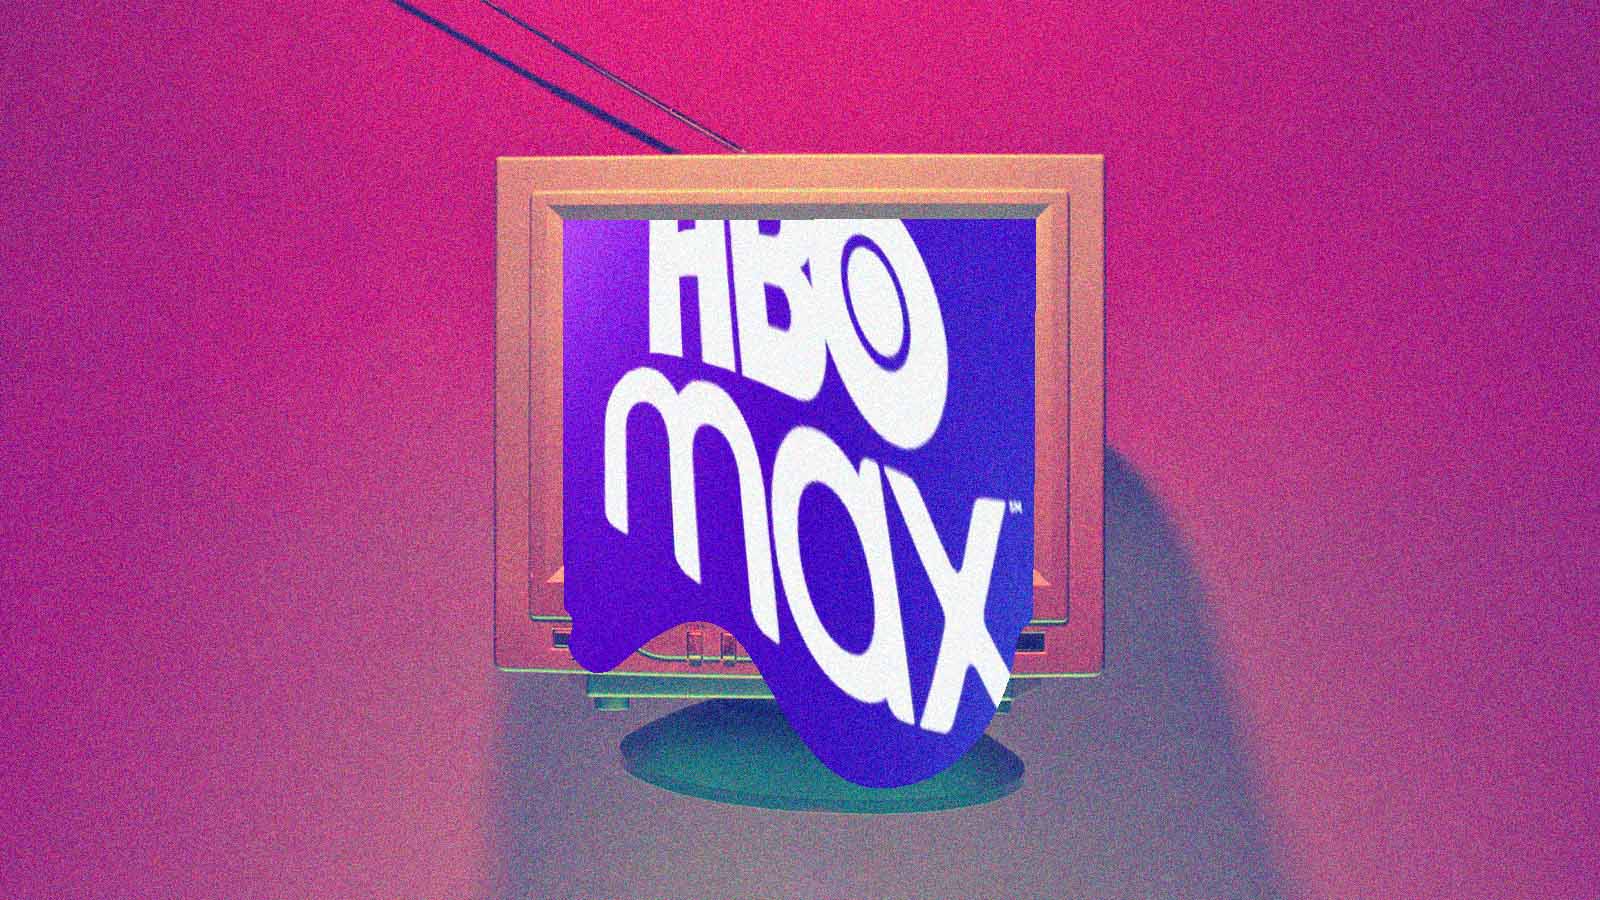  HBO Max adiciona em seu catálogo a 4ª